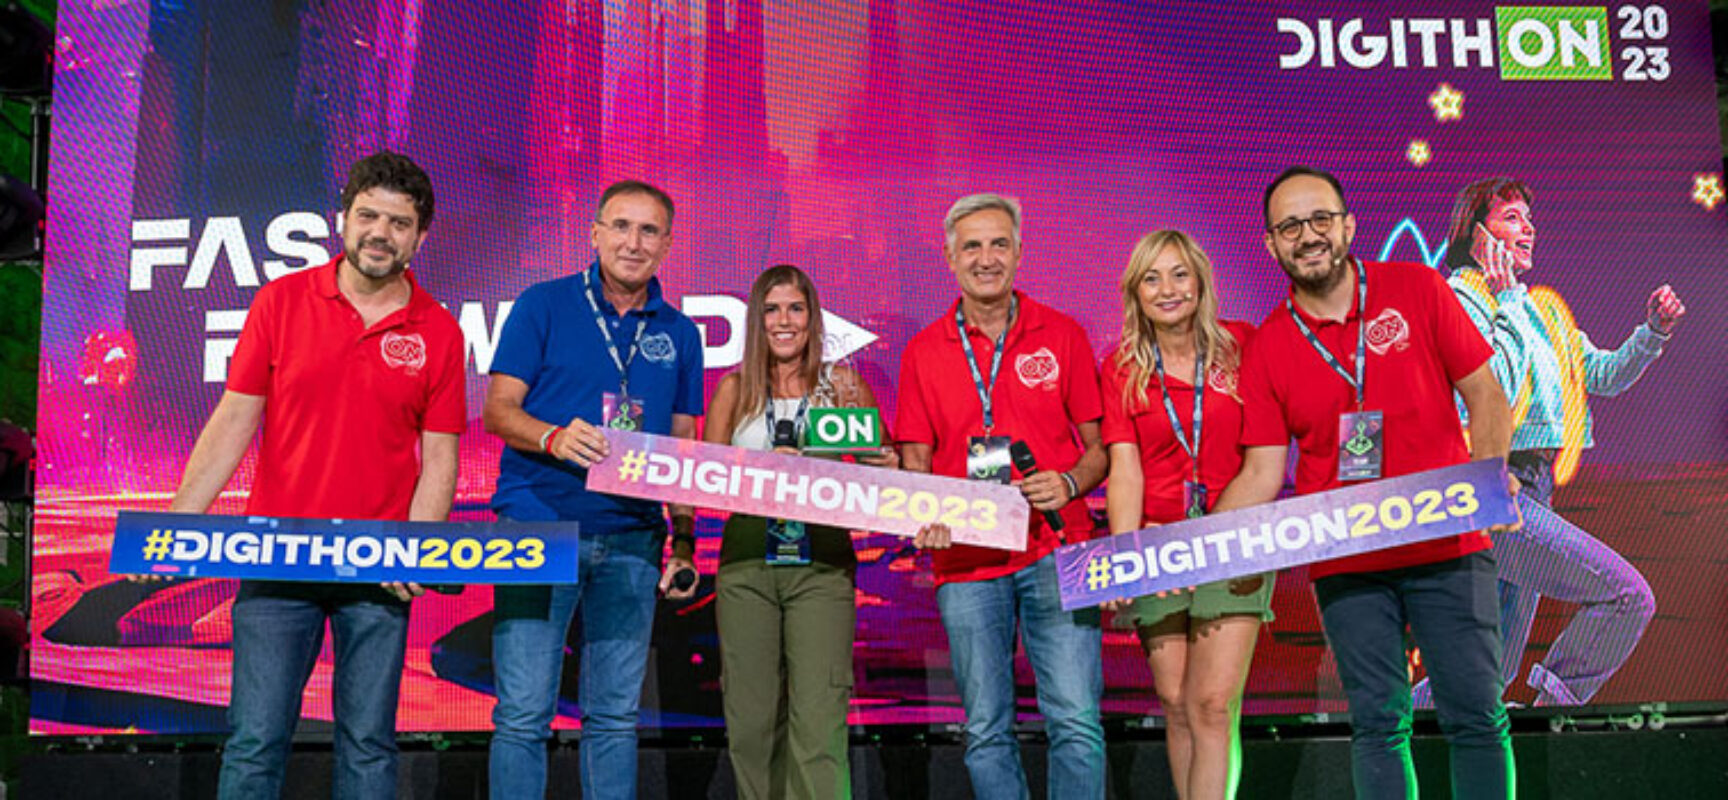 DigithON 2023: vince la startup torinese Novis Game, Band IA si aggiudica la EY CUP / i premiati